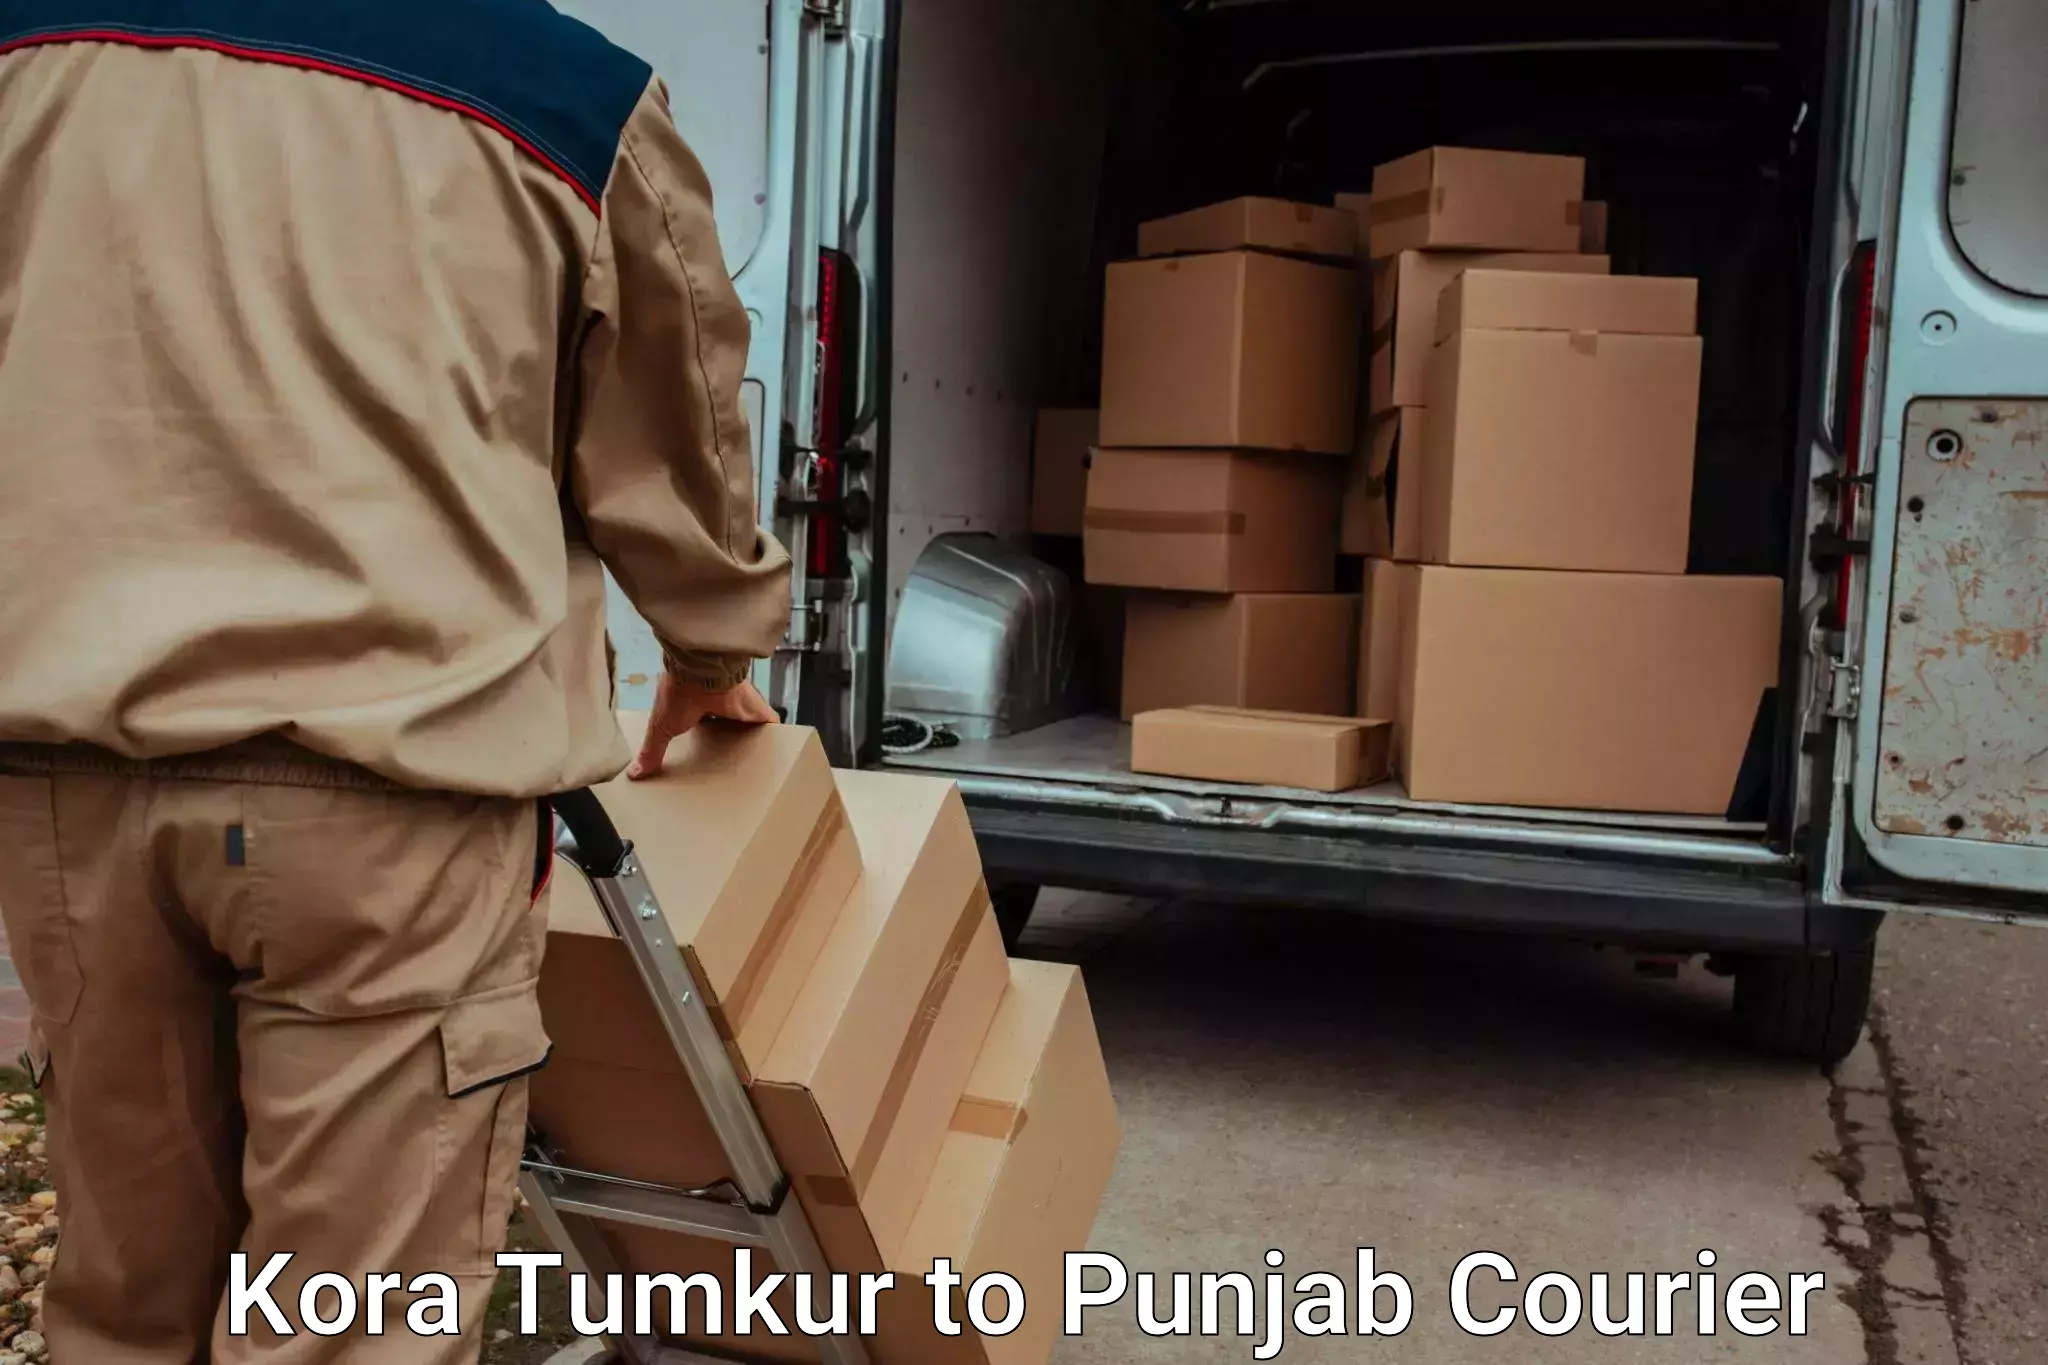 Excess baggage transport Kora Tumkur to Dhuri